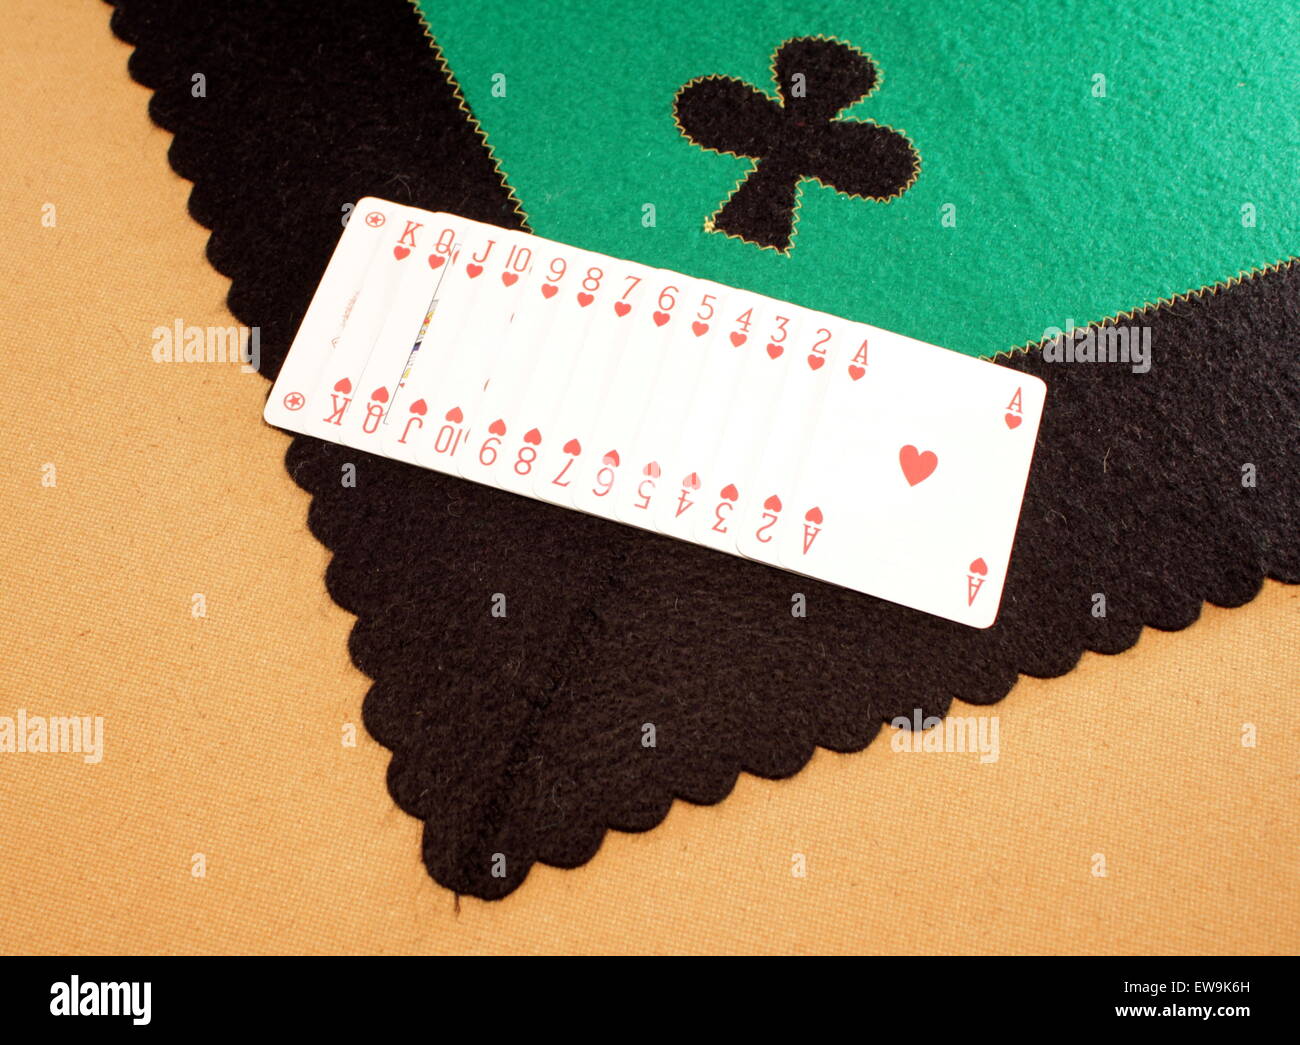 Table de jeu, l'échelle carte avec signe de cœurs. Banque D'Images